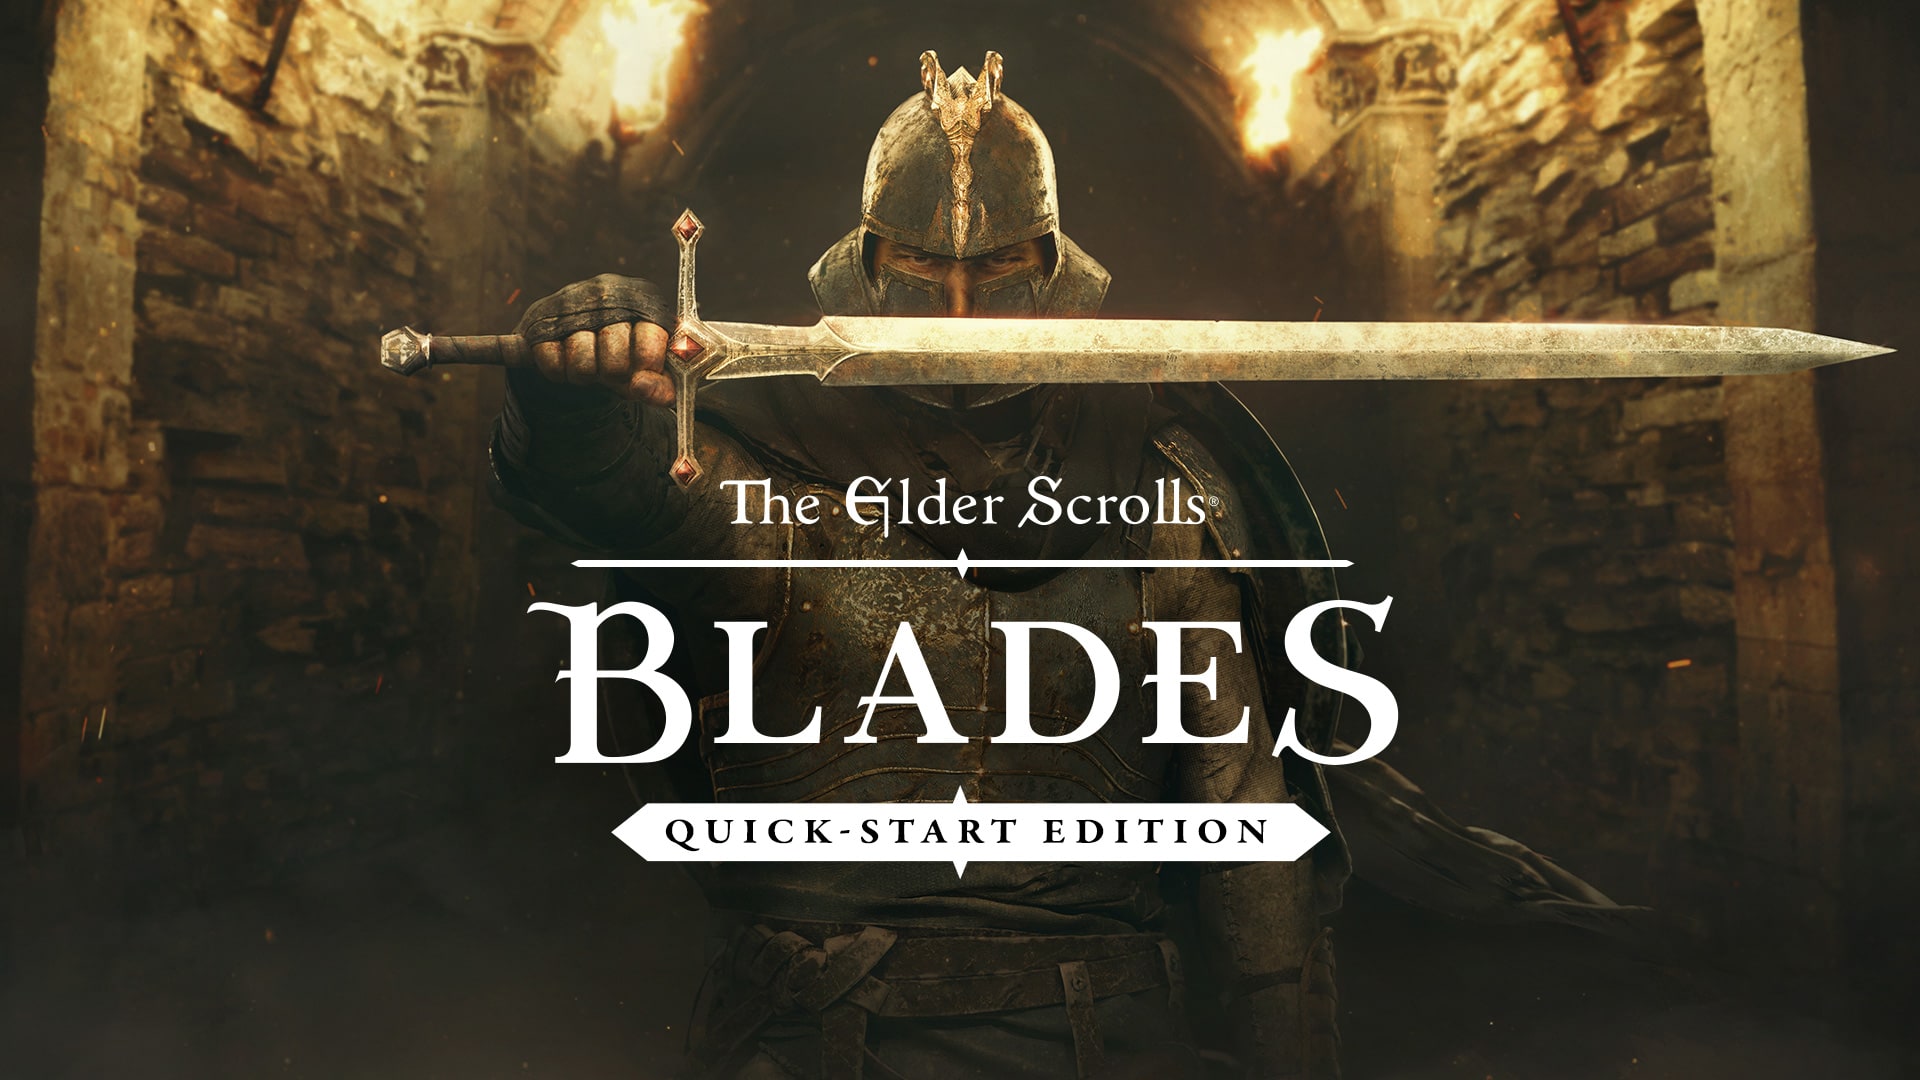 The Elder Scrolls®: Blades - Quick-Start Edition